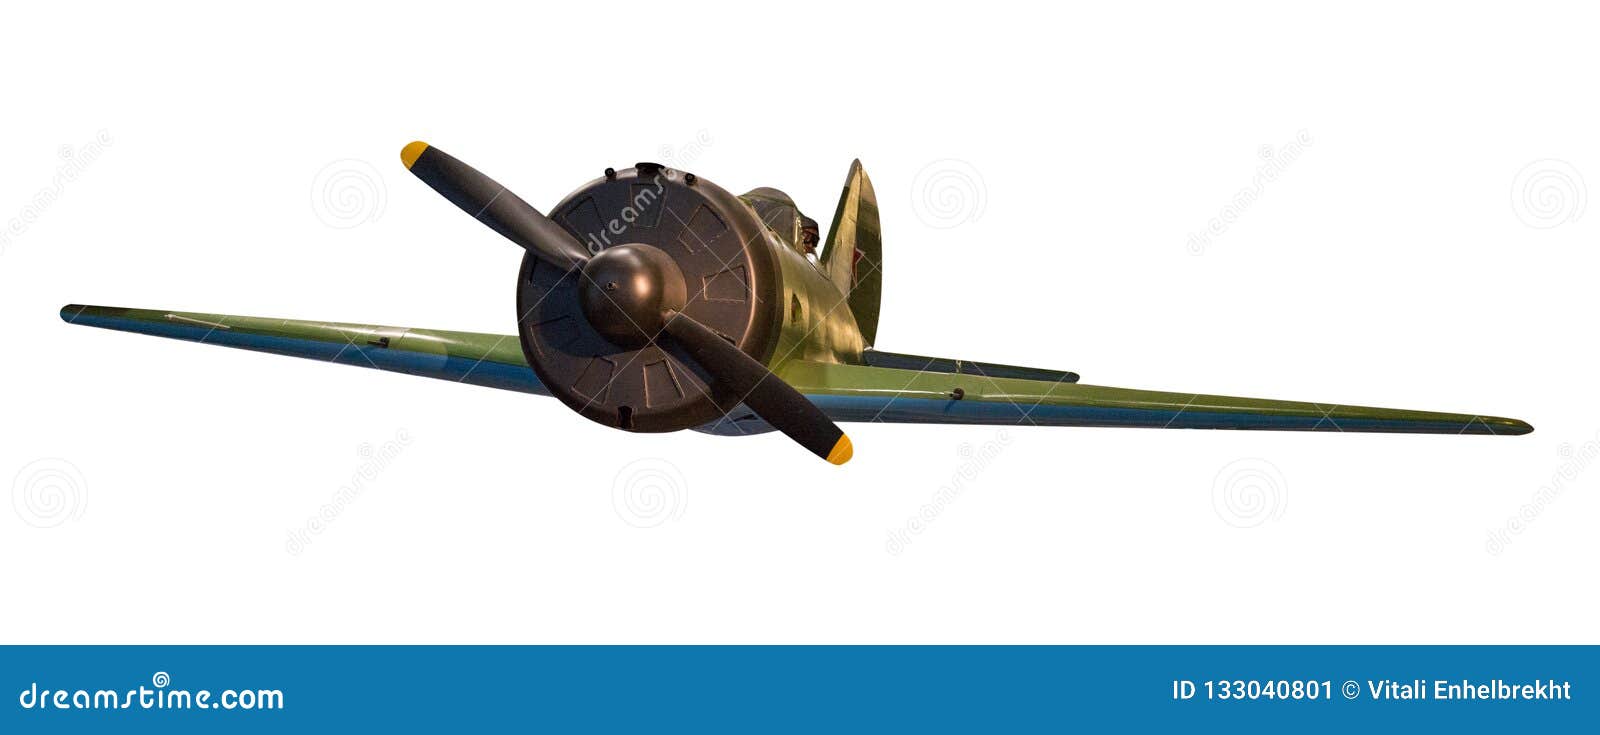 Aviones Soviéticos De La Segunda Guerra Mundial Aislados En El Fondo Blanco  Ai Imagen de archivo - Imagen de bombardero, ataque: 133040801